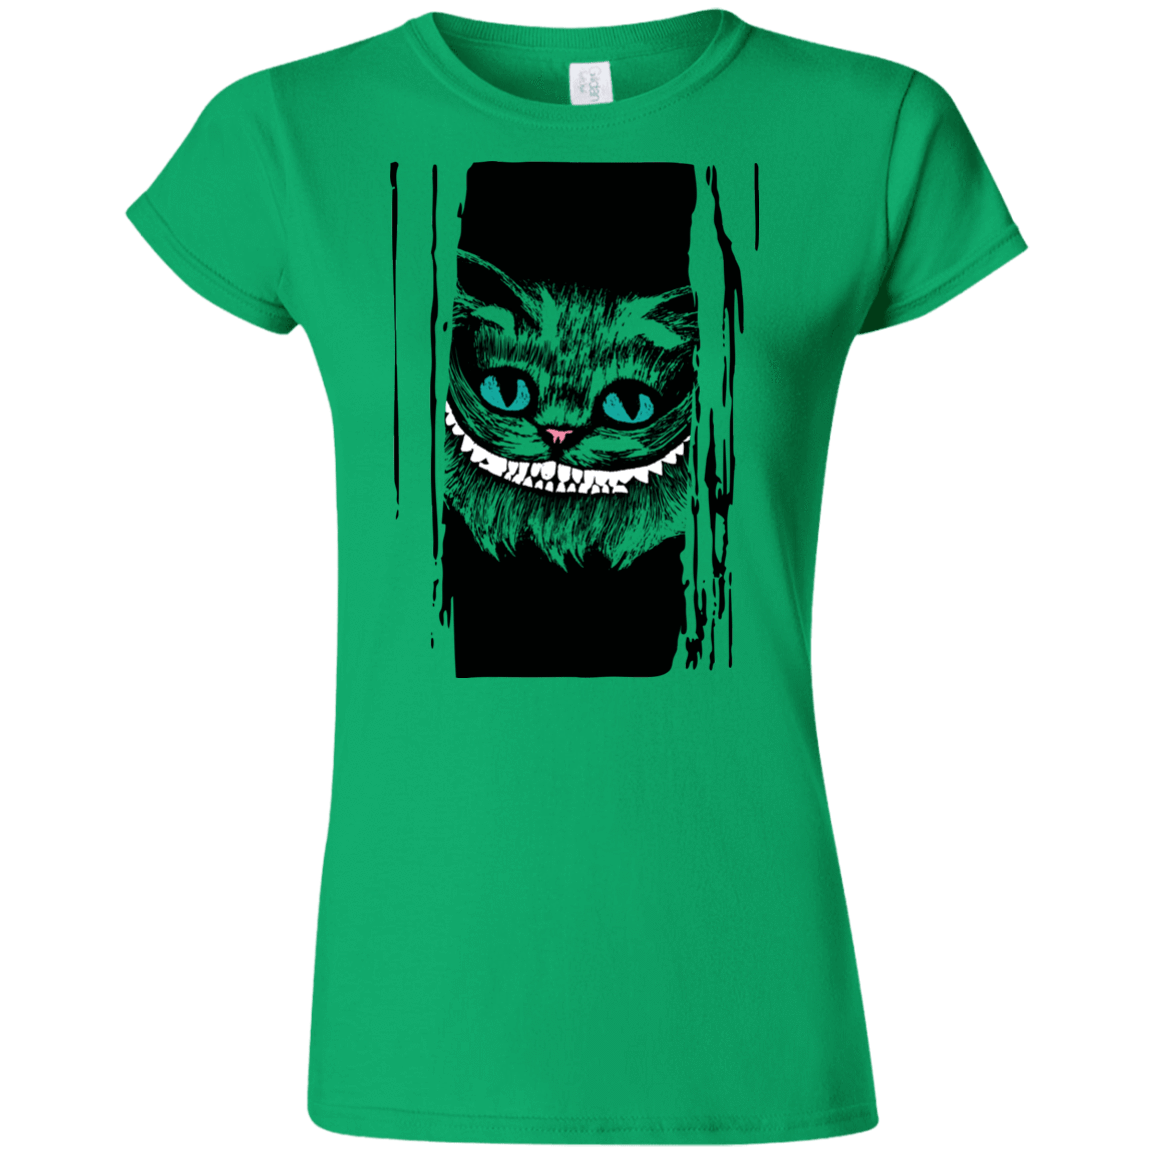 T-Shirts Irish Green / S Here's Cheshire Junior Slimmer-Fit T-Shirt